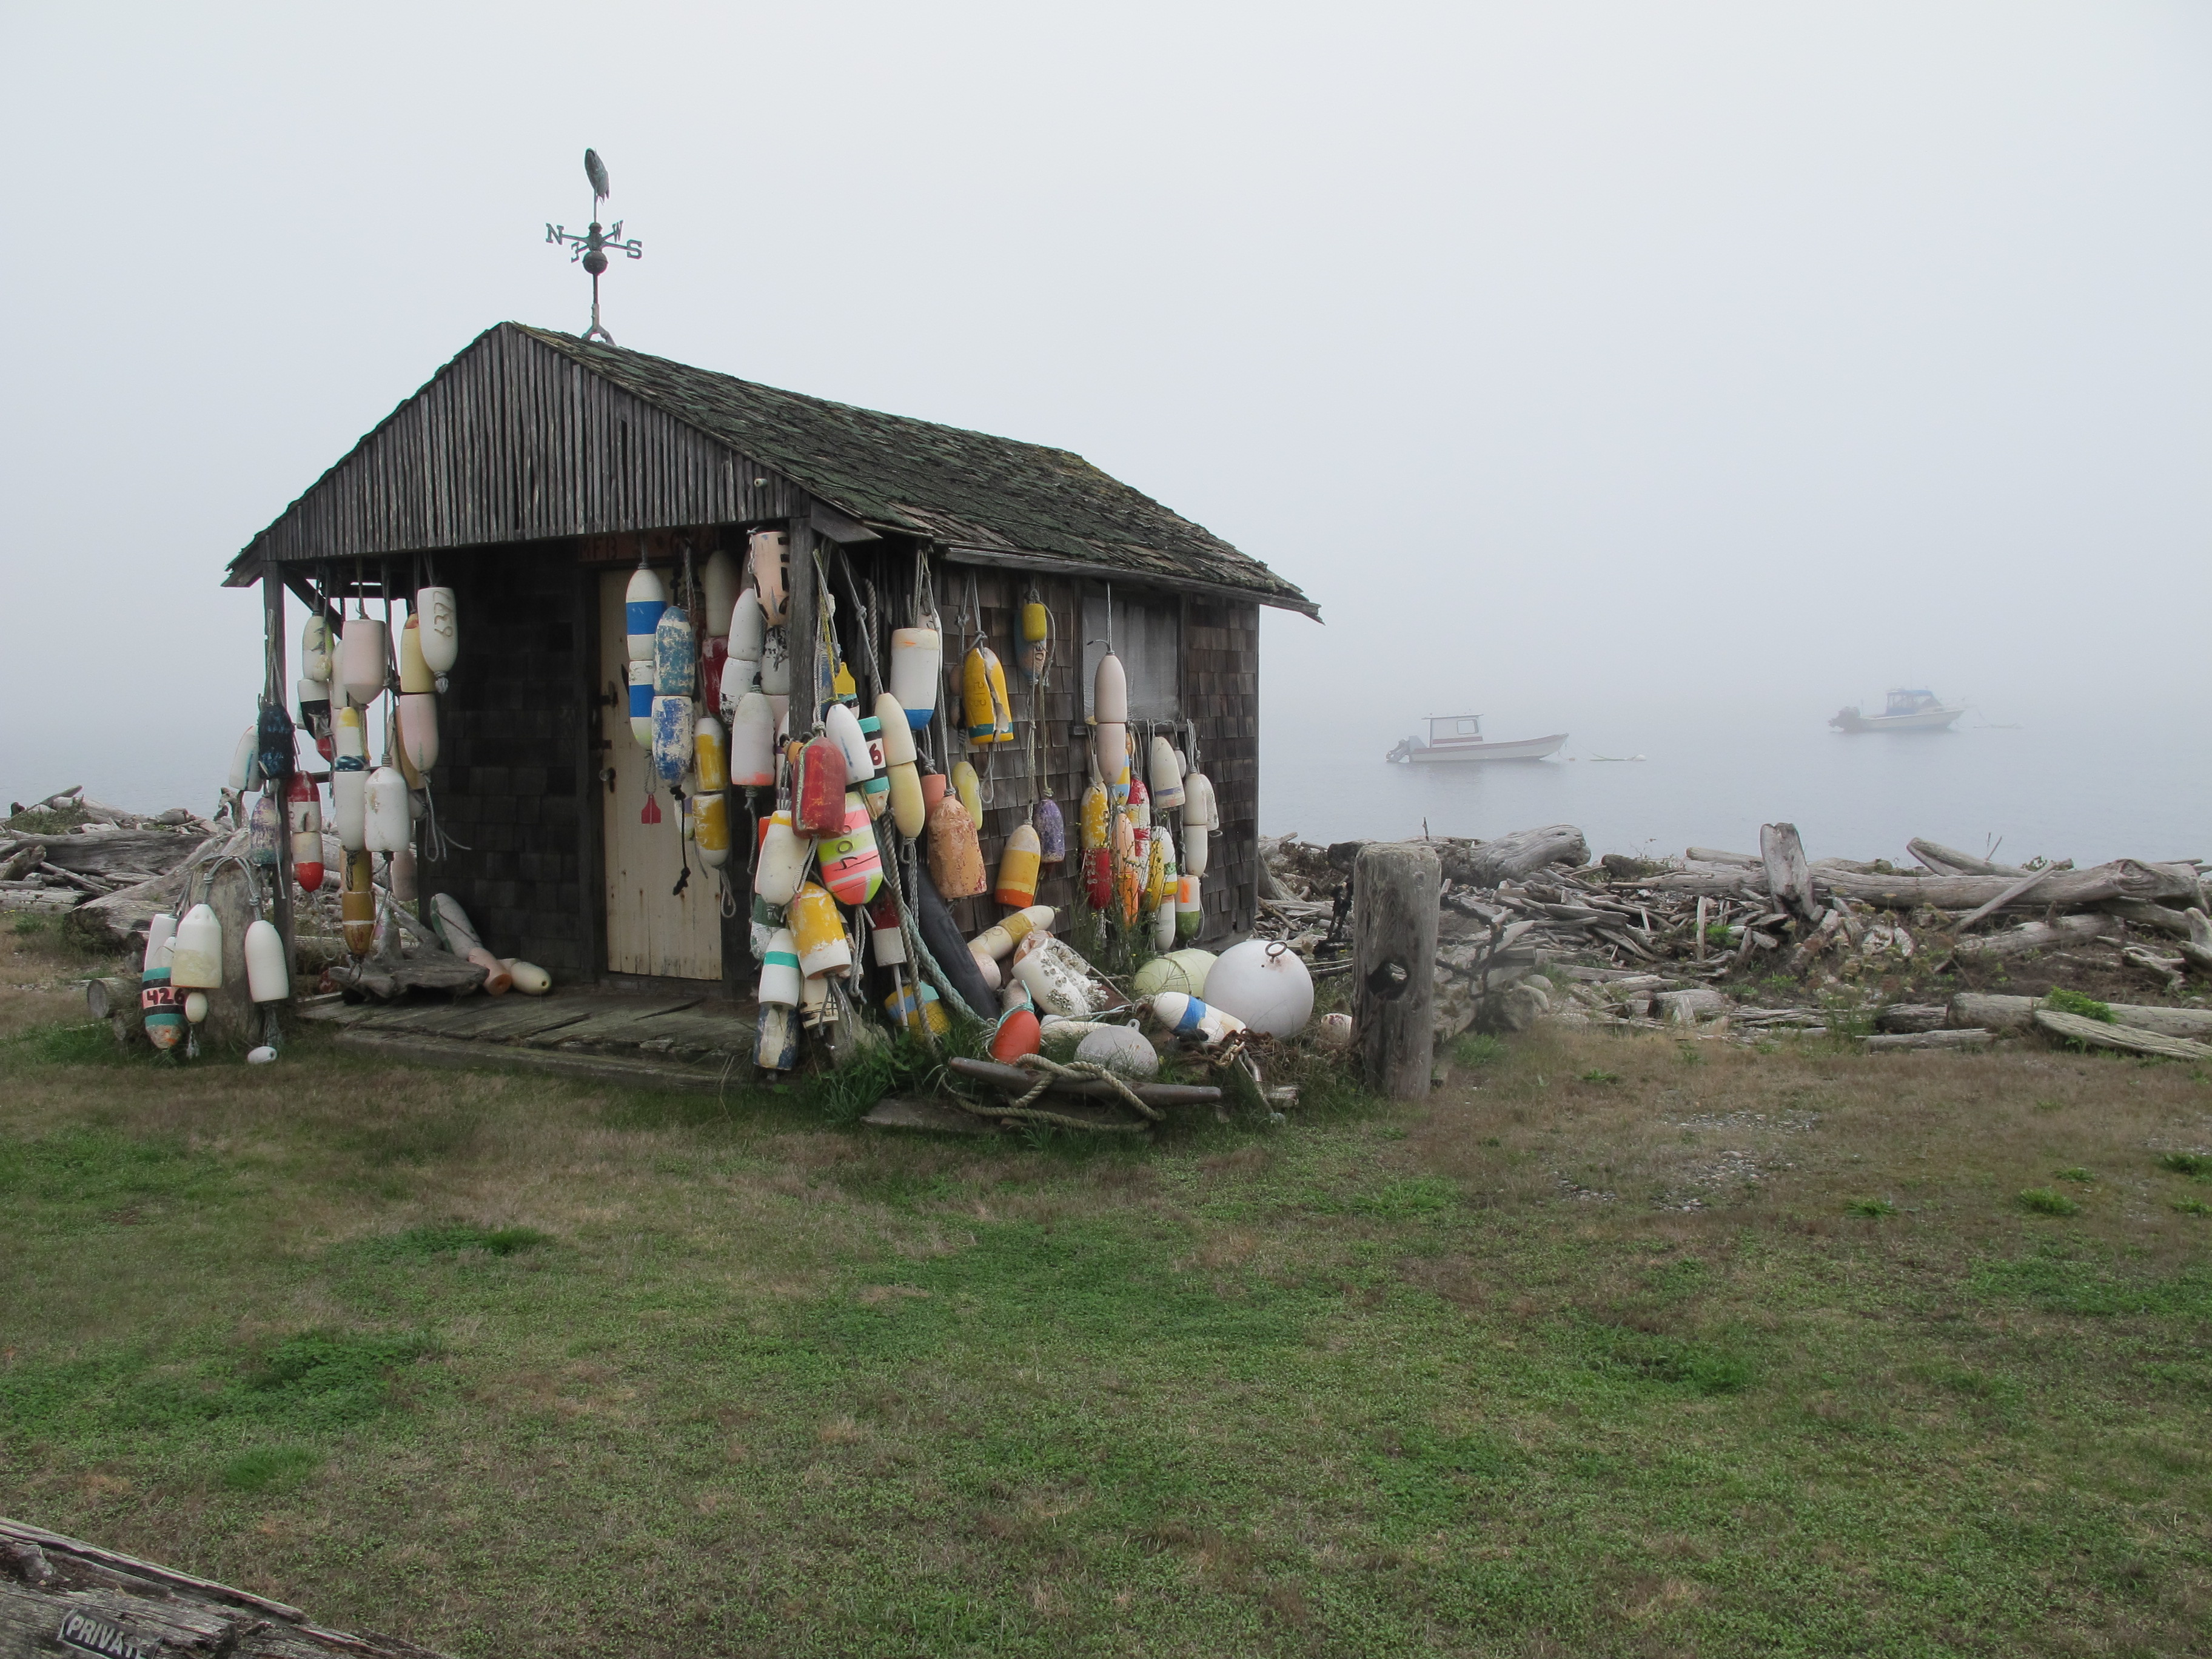 Lummi Island feels otherworldly - half dream, half reality in heavy fog. Photo by Marla Norman.